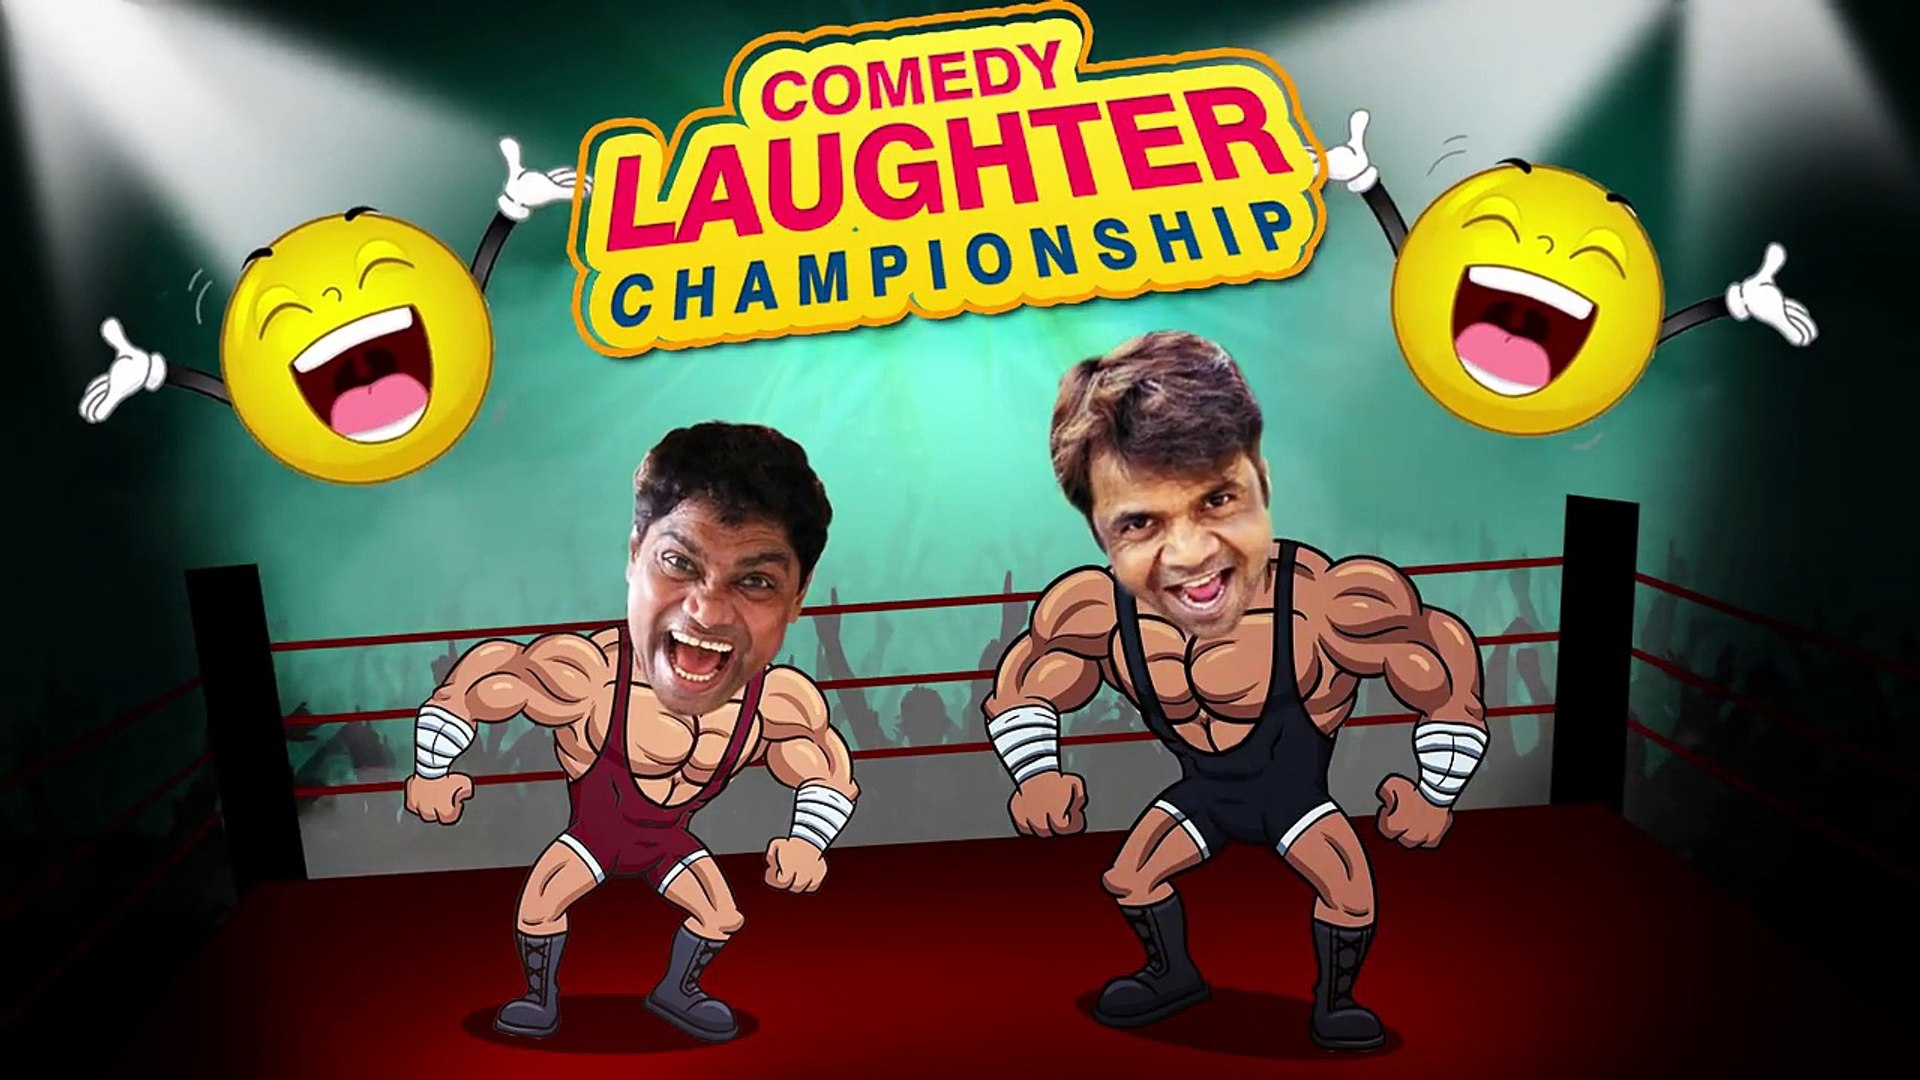 Johnny Lever Comedy Scenes  VS  Rajpal Yadav Comedy Scenes {HD} - 1 - Comedy Laughter Championship